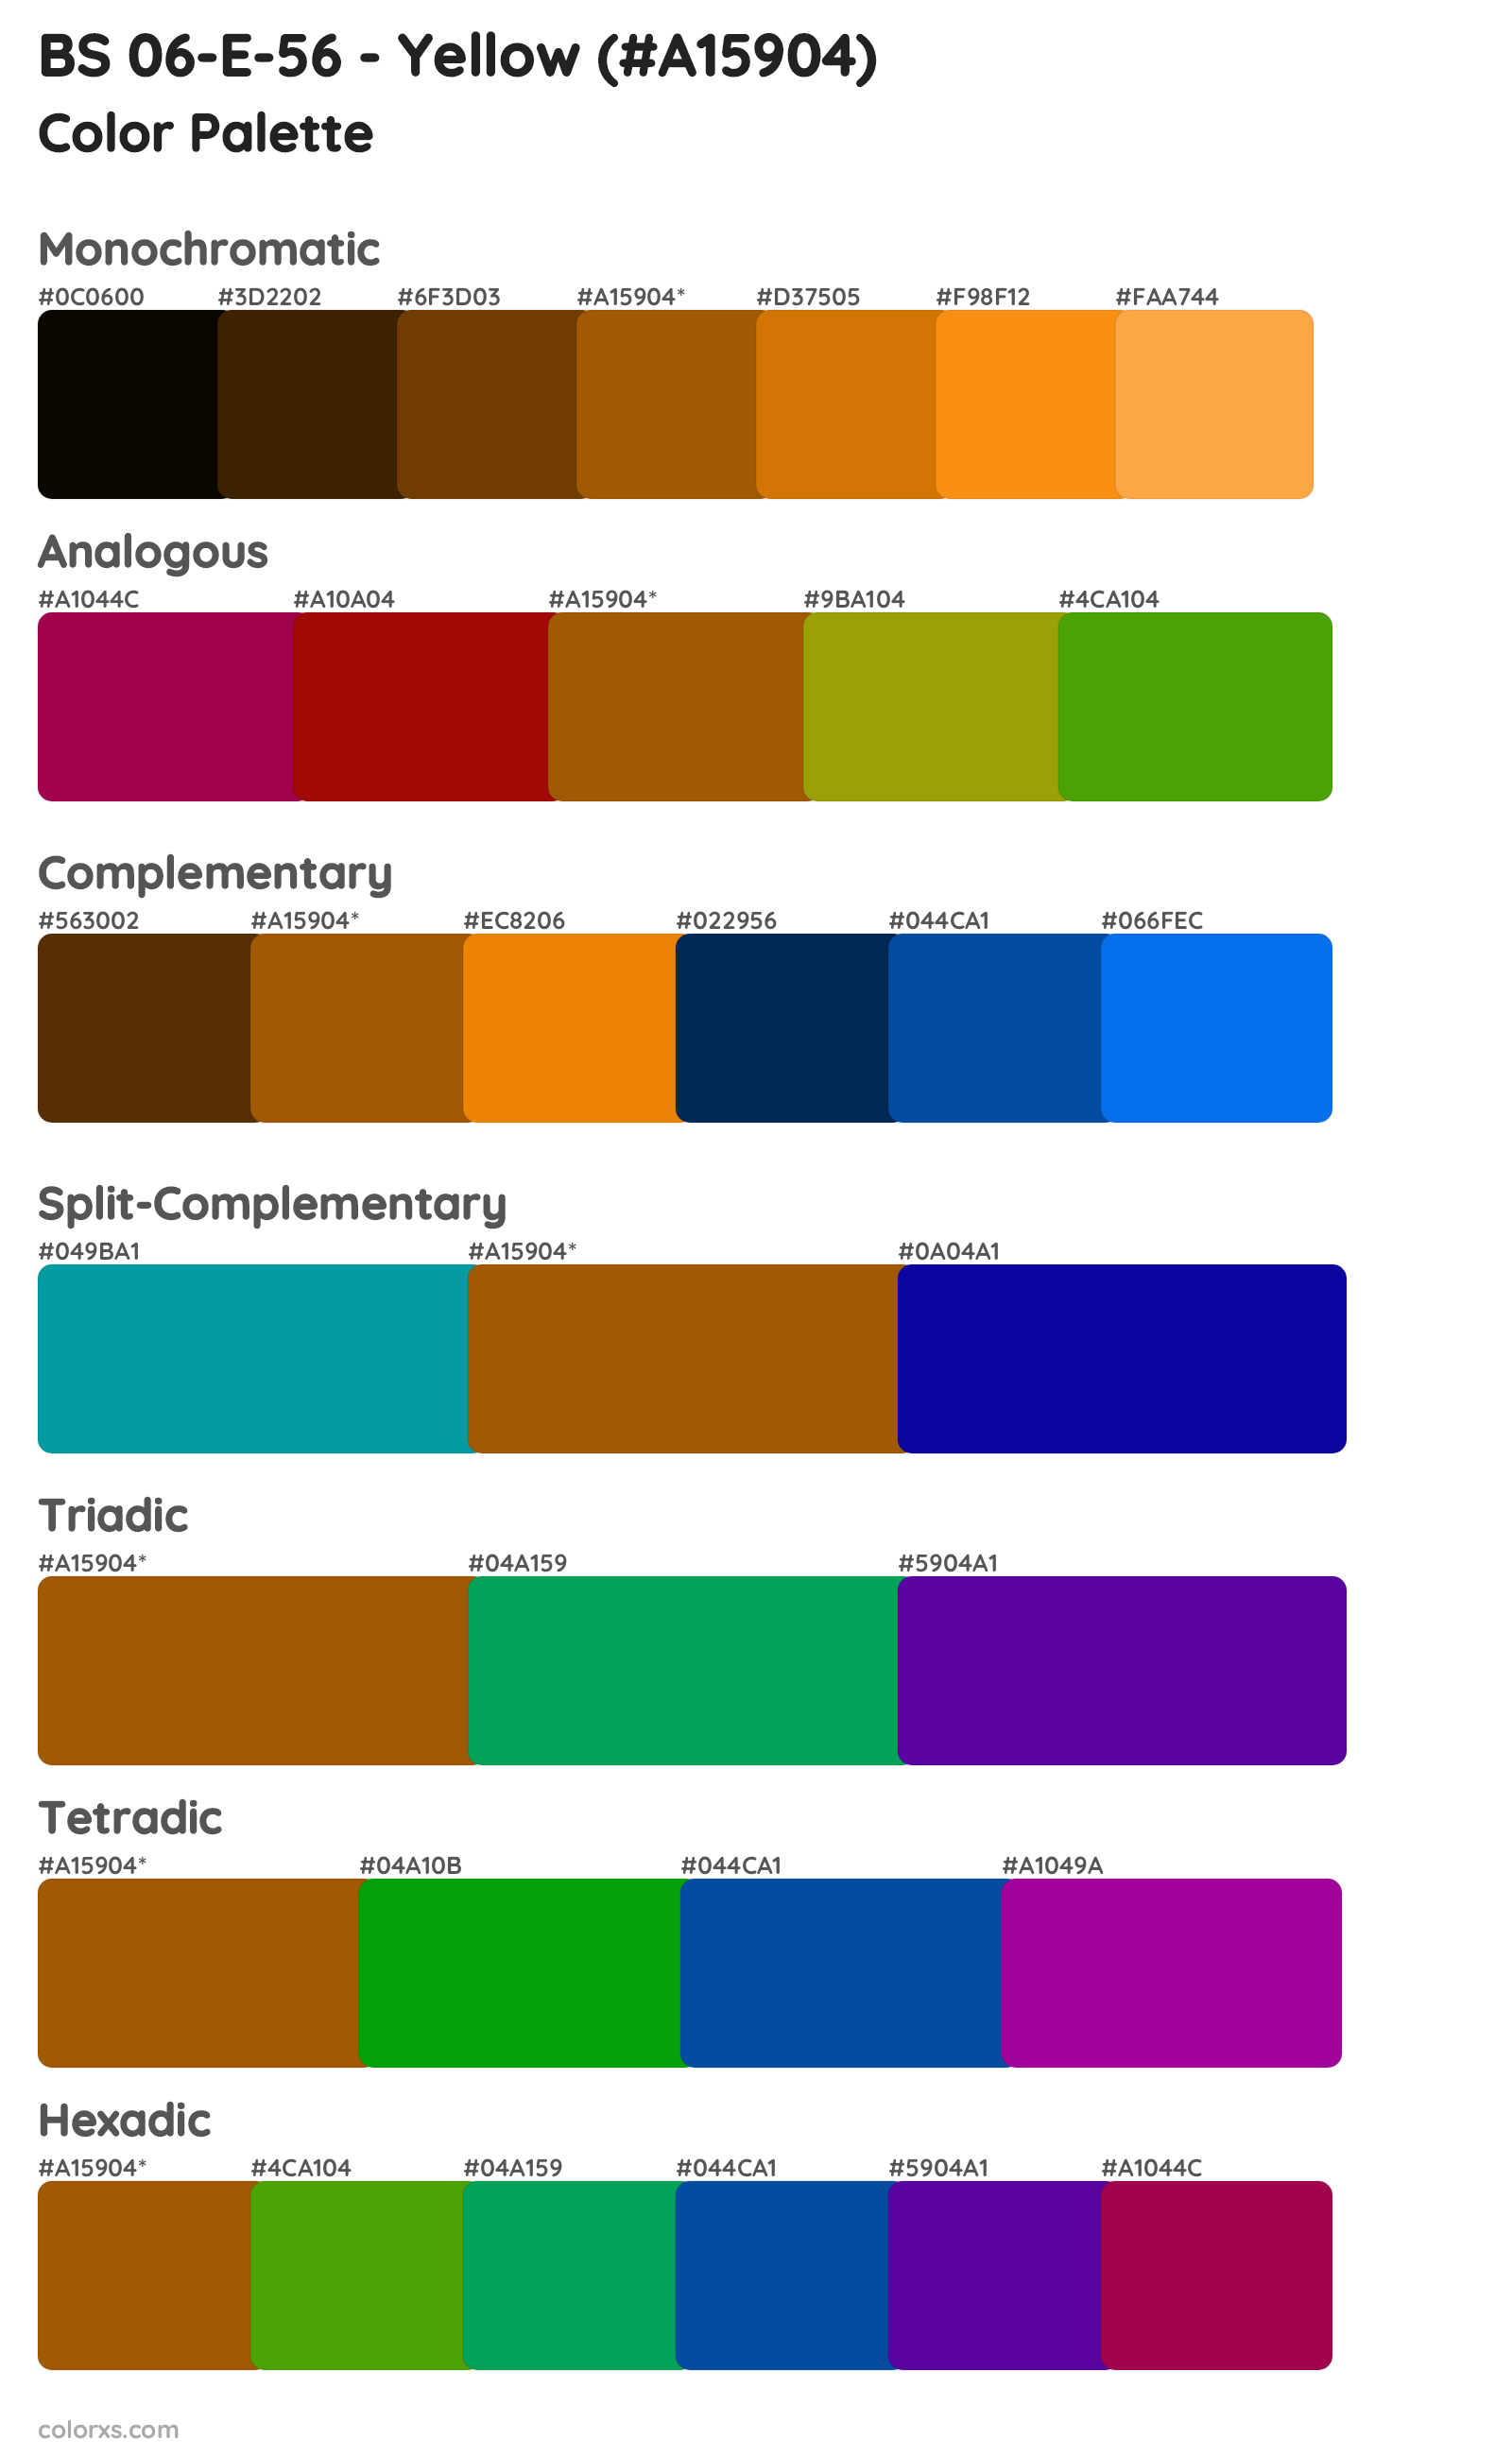 BS 06-E-56 - Yellow Color Scheme Palettes